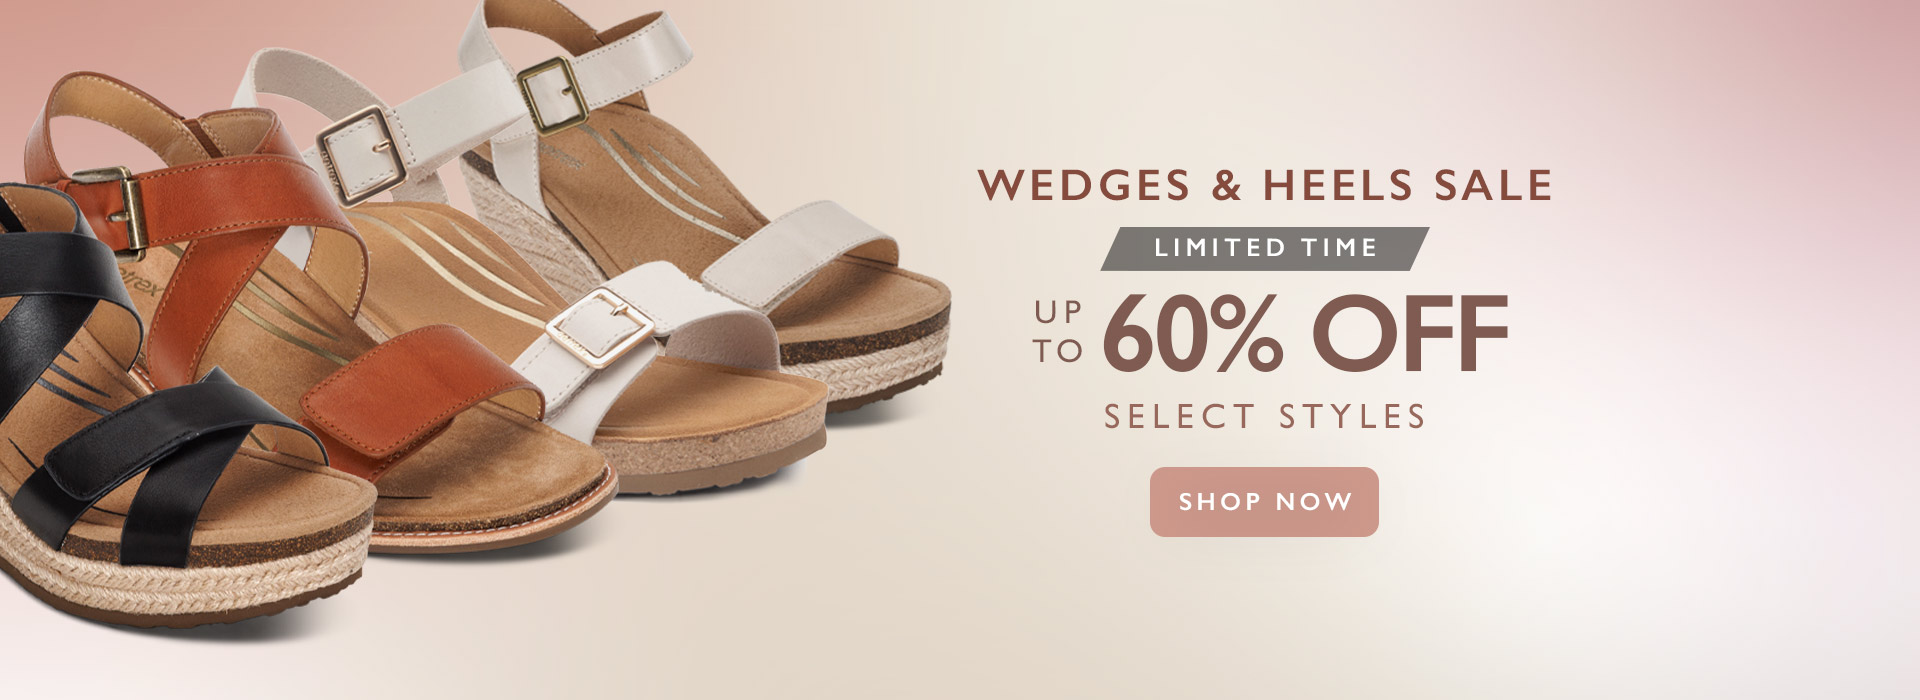 Wedges Heels Sale